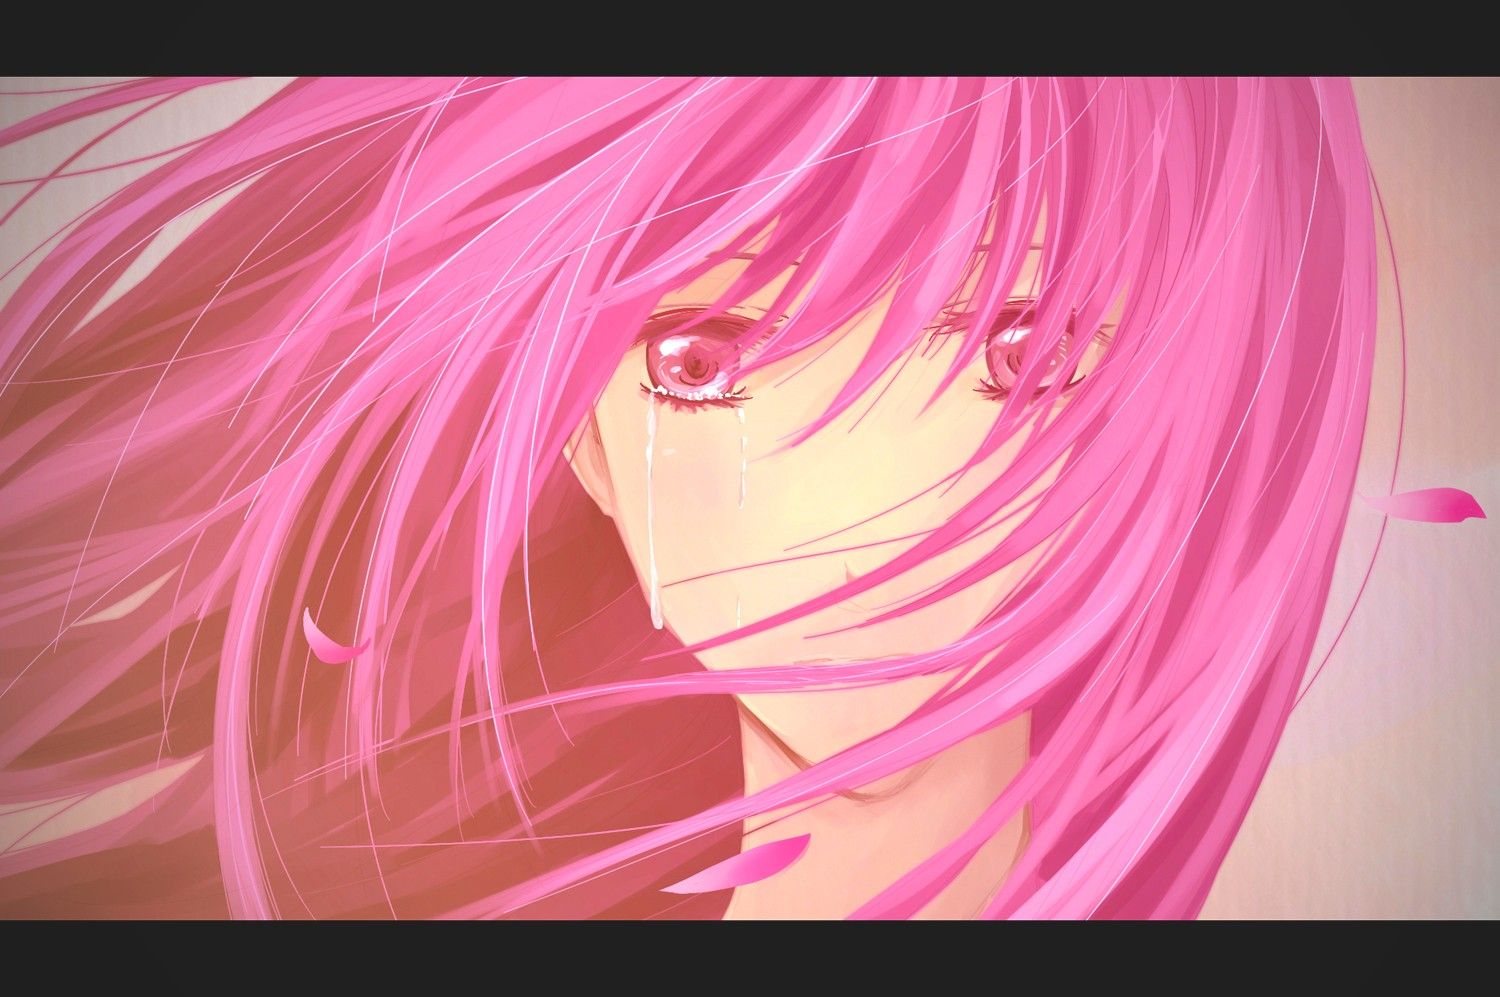 Women tears sad pink hair anime teardrops pink eyes sadness anime girls wallpaperx997